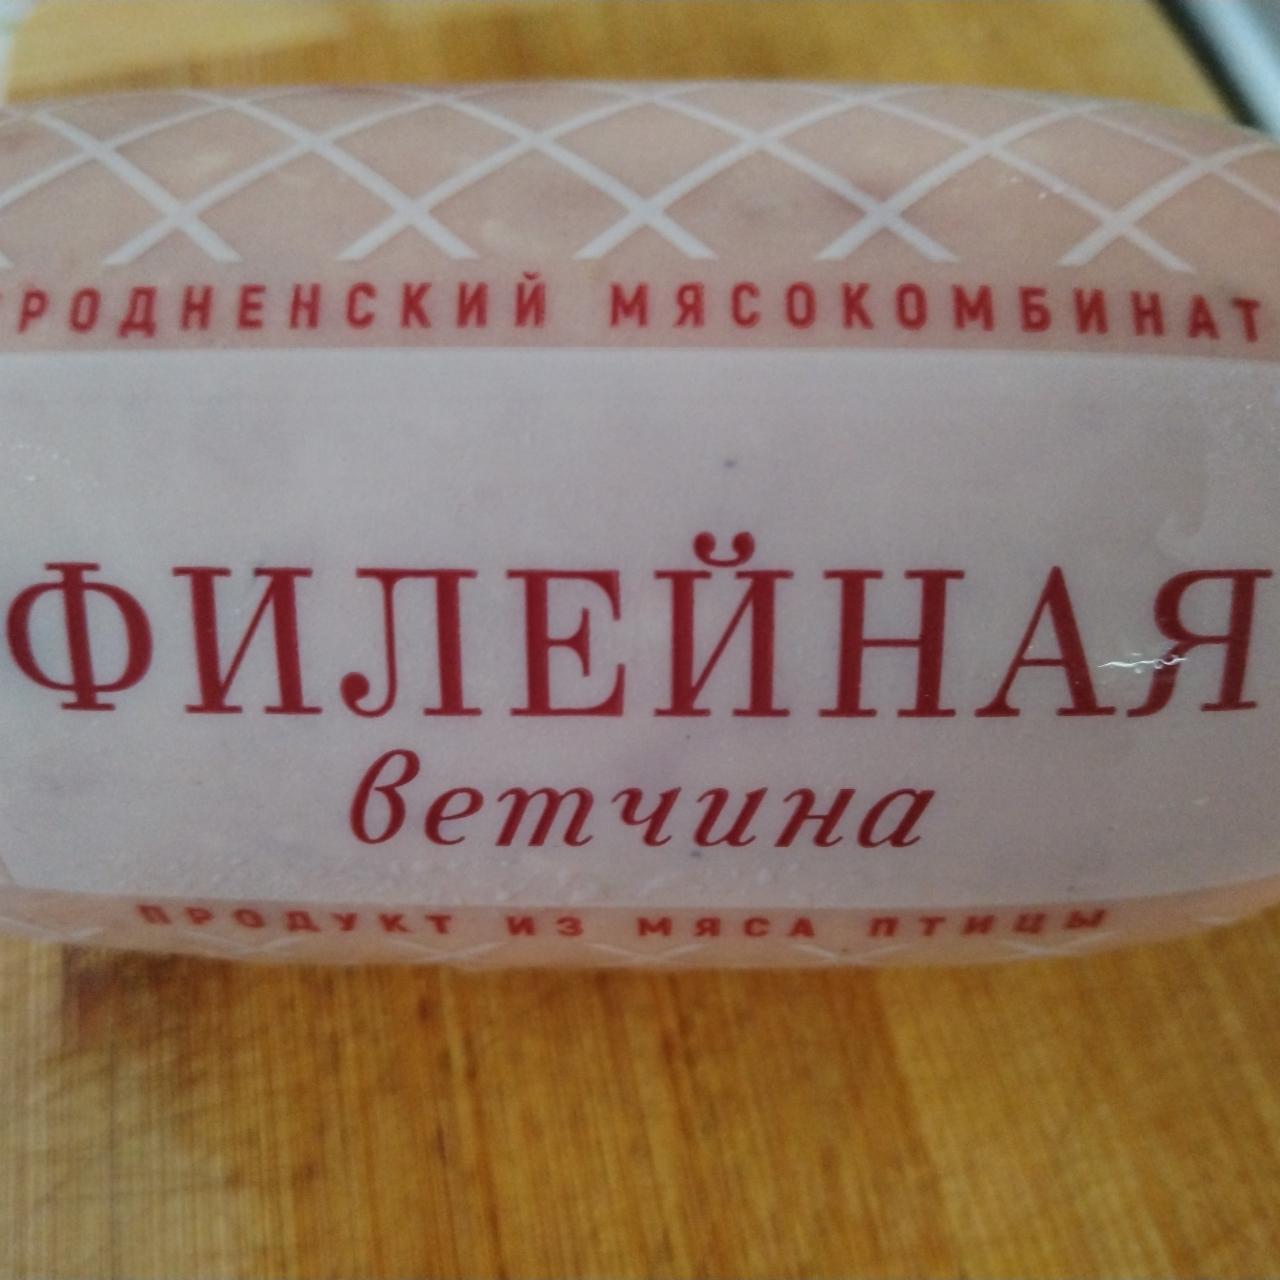 Фото - Ветчина филейная варёная Гродненский мясокомбинат